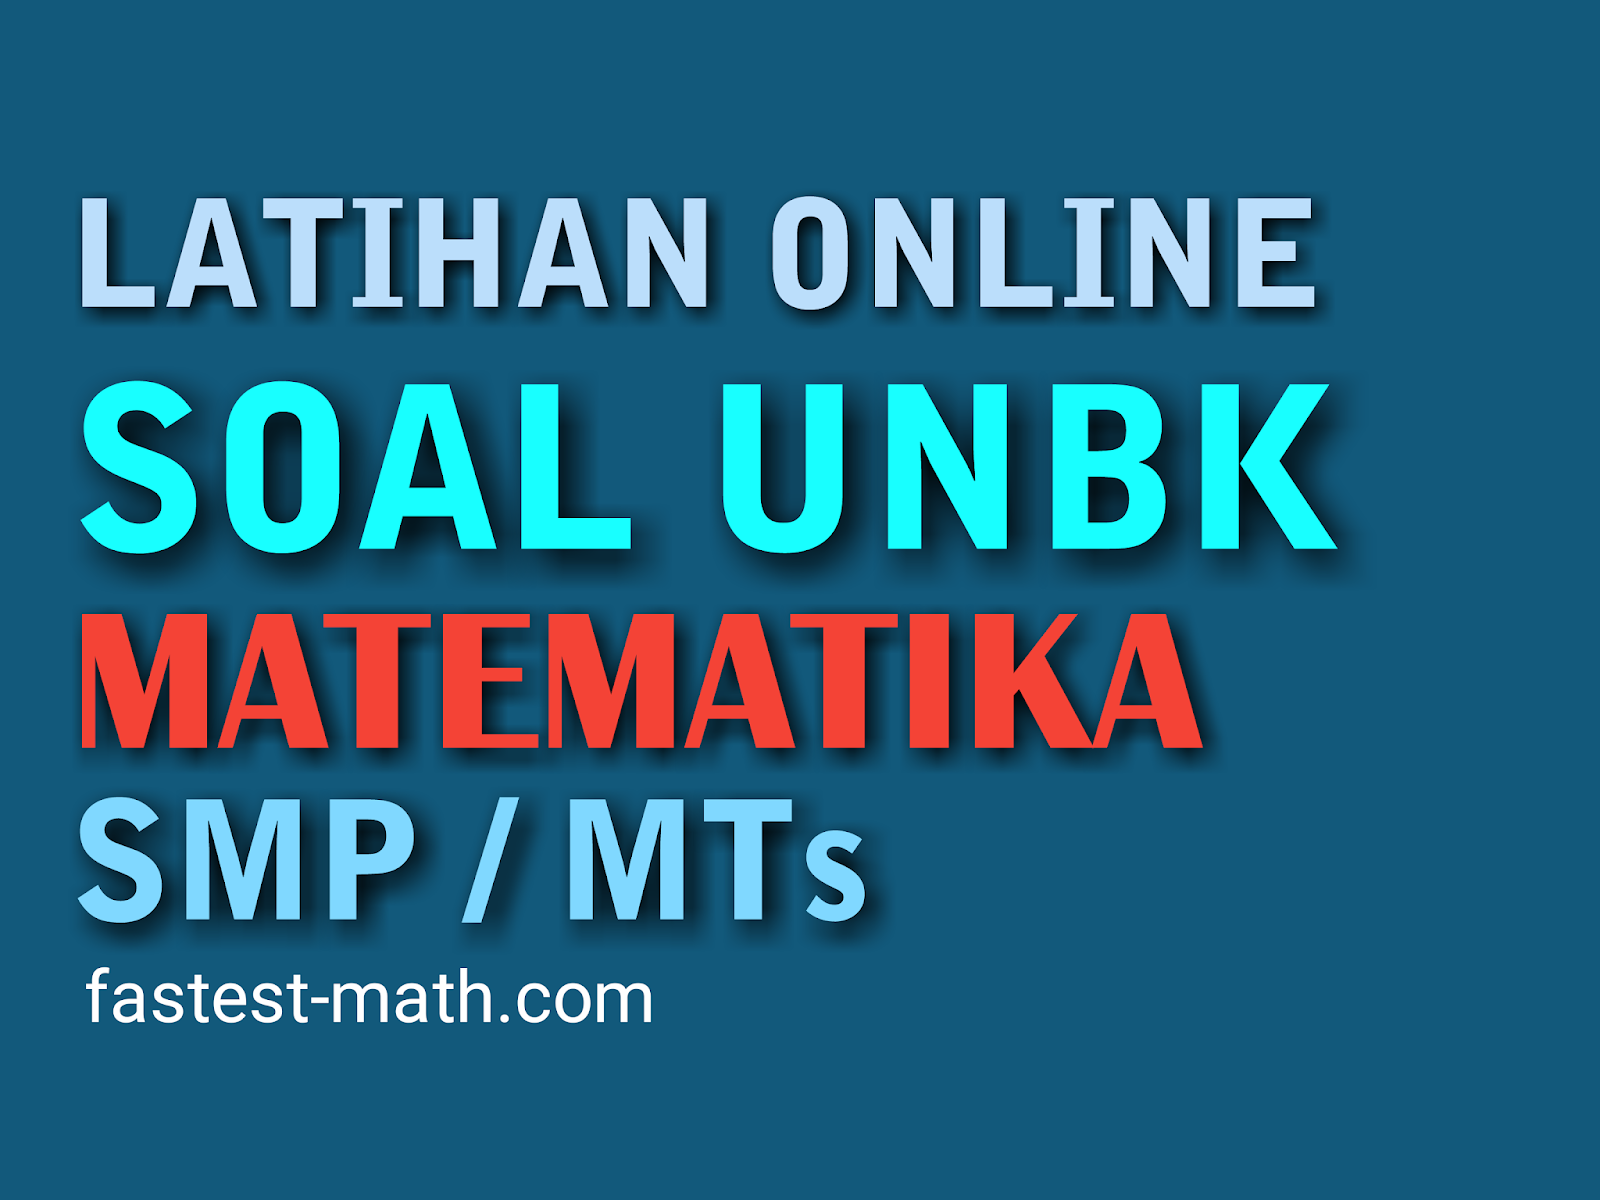 Latihan Soal Unbk Matematika Smp Mts 2020 Latihan Online 1